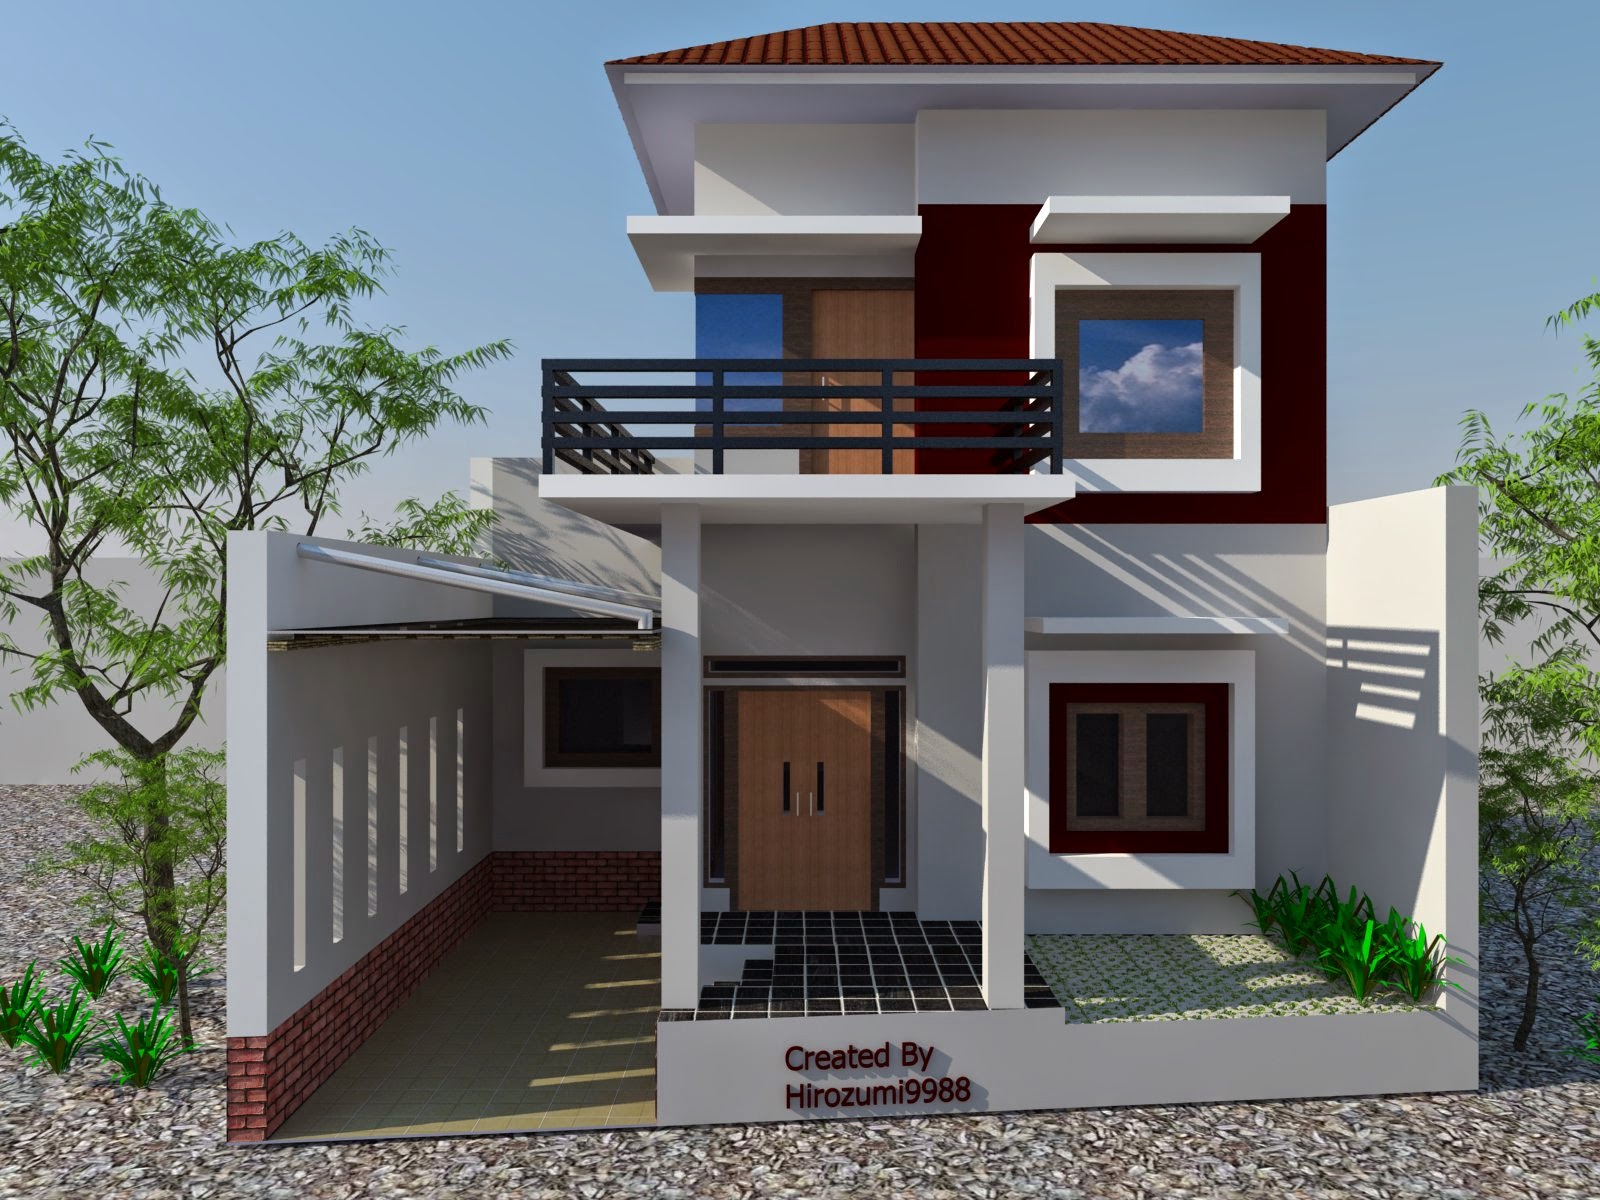 Desain rumah minimalis 2 lantai terbaru - Desain Rumah Minimalis